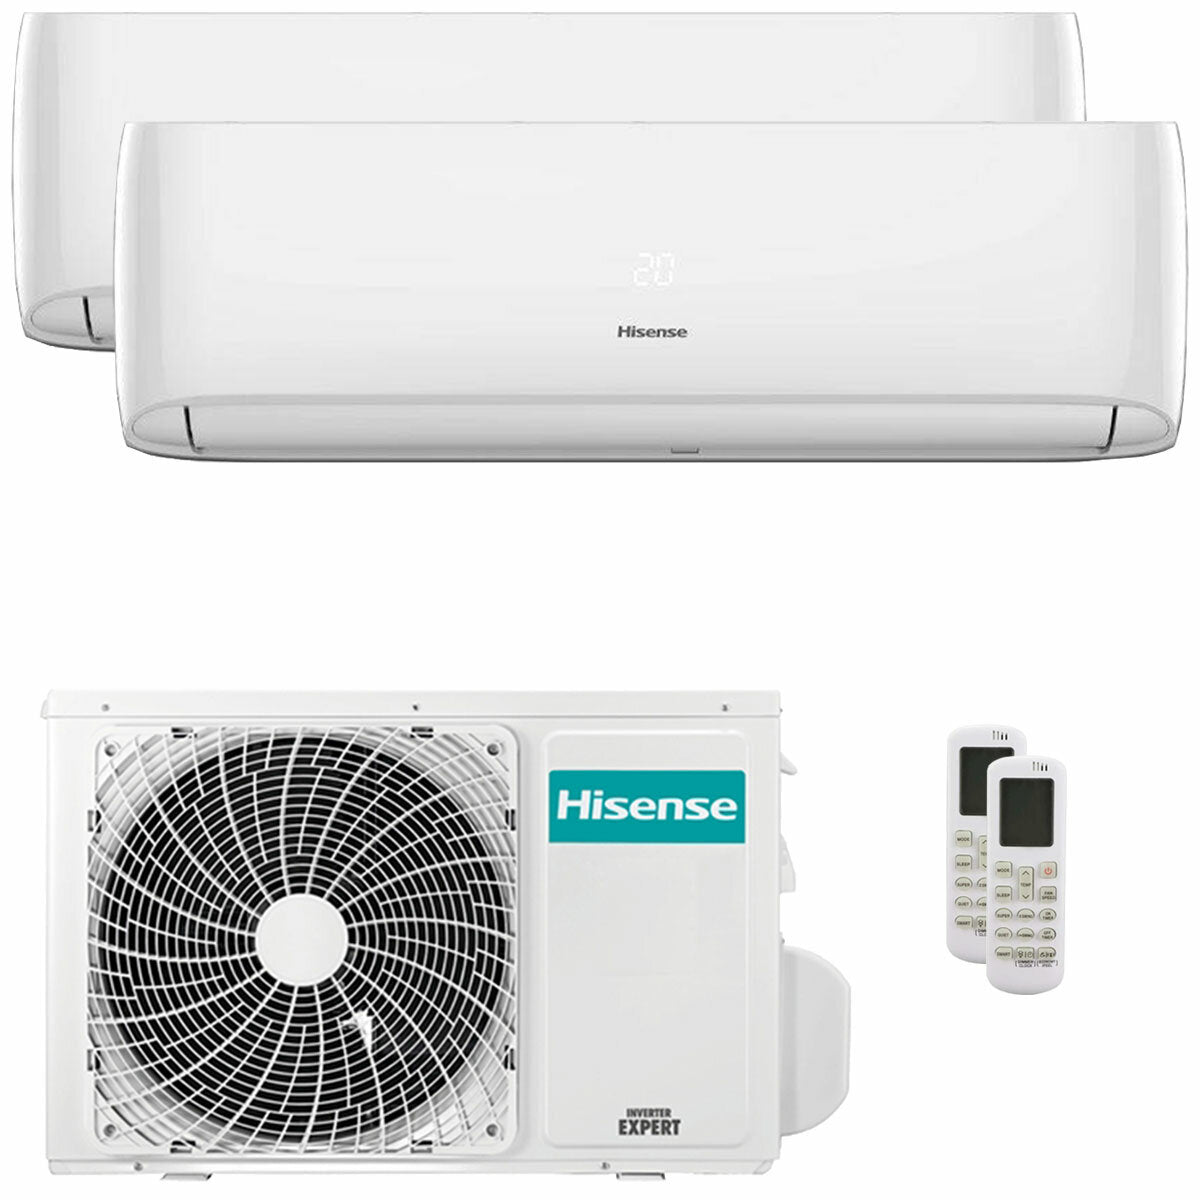 Hisense Hi-Comfort climatiseur double split 12000+18000 BTU onduleur A++ wifi unité extérieure 5,5 kW